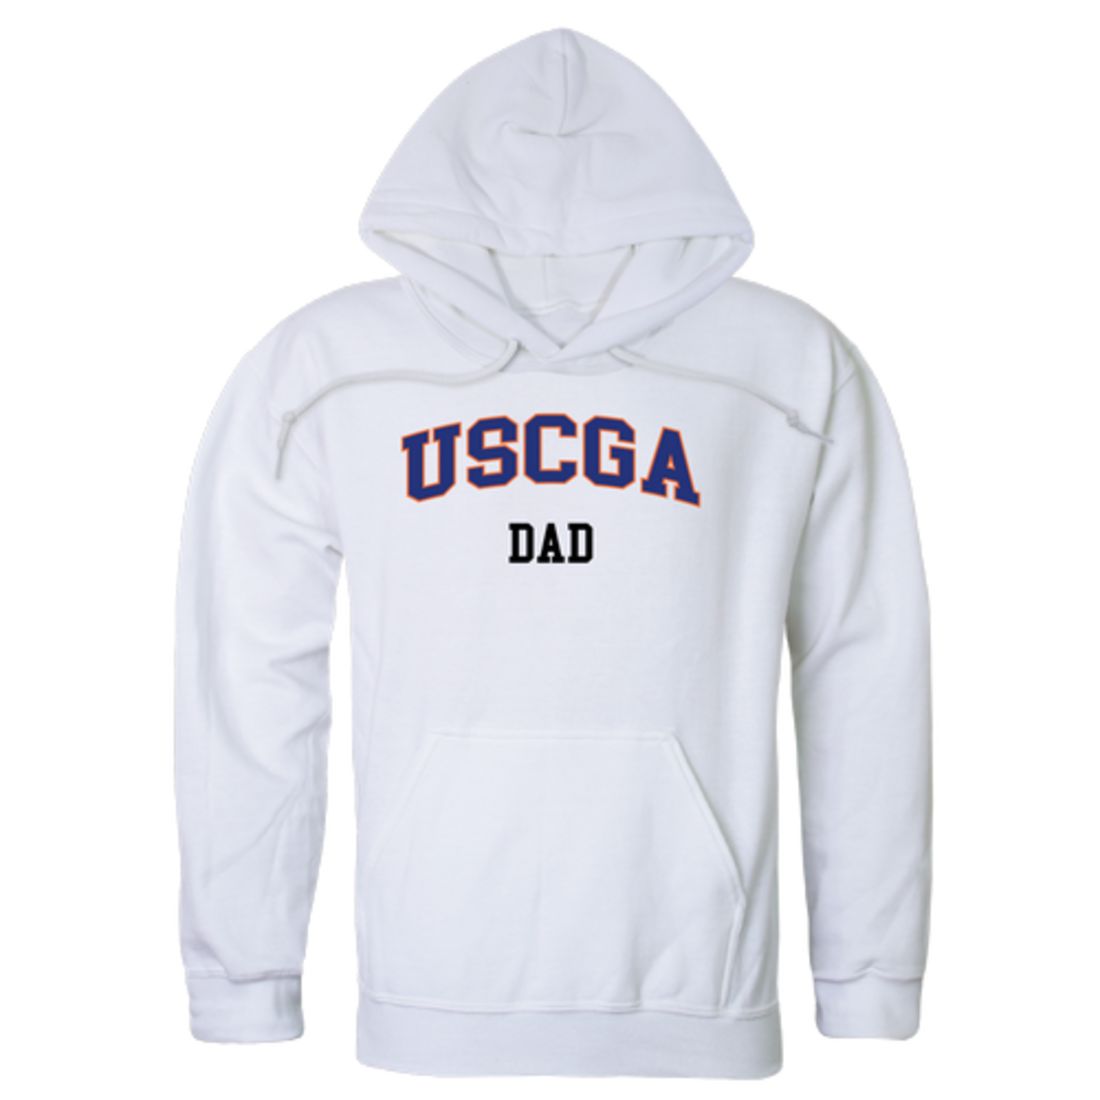 USCGA United States Coast Guard Academy Bears Dad Fleece Hoodie Sweatshirts Heather Grey-Campus-Wardrobe